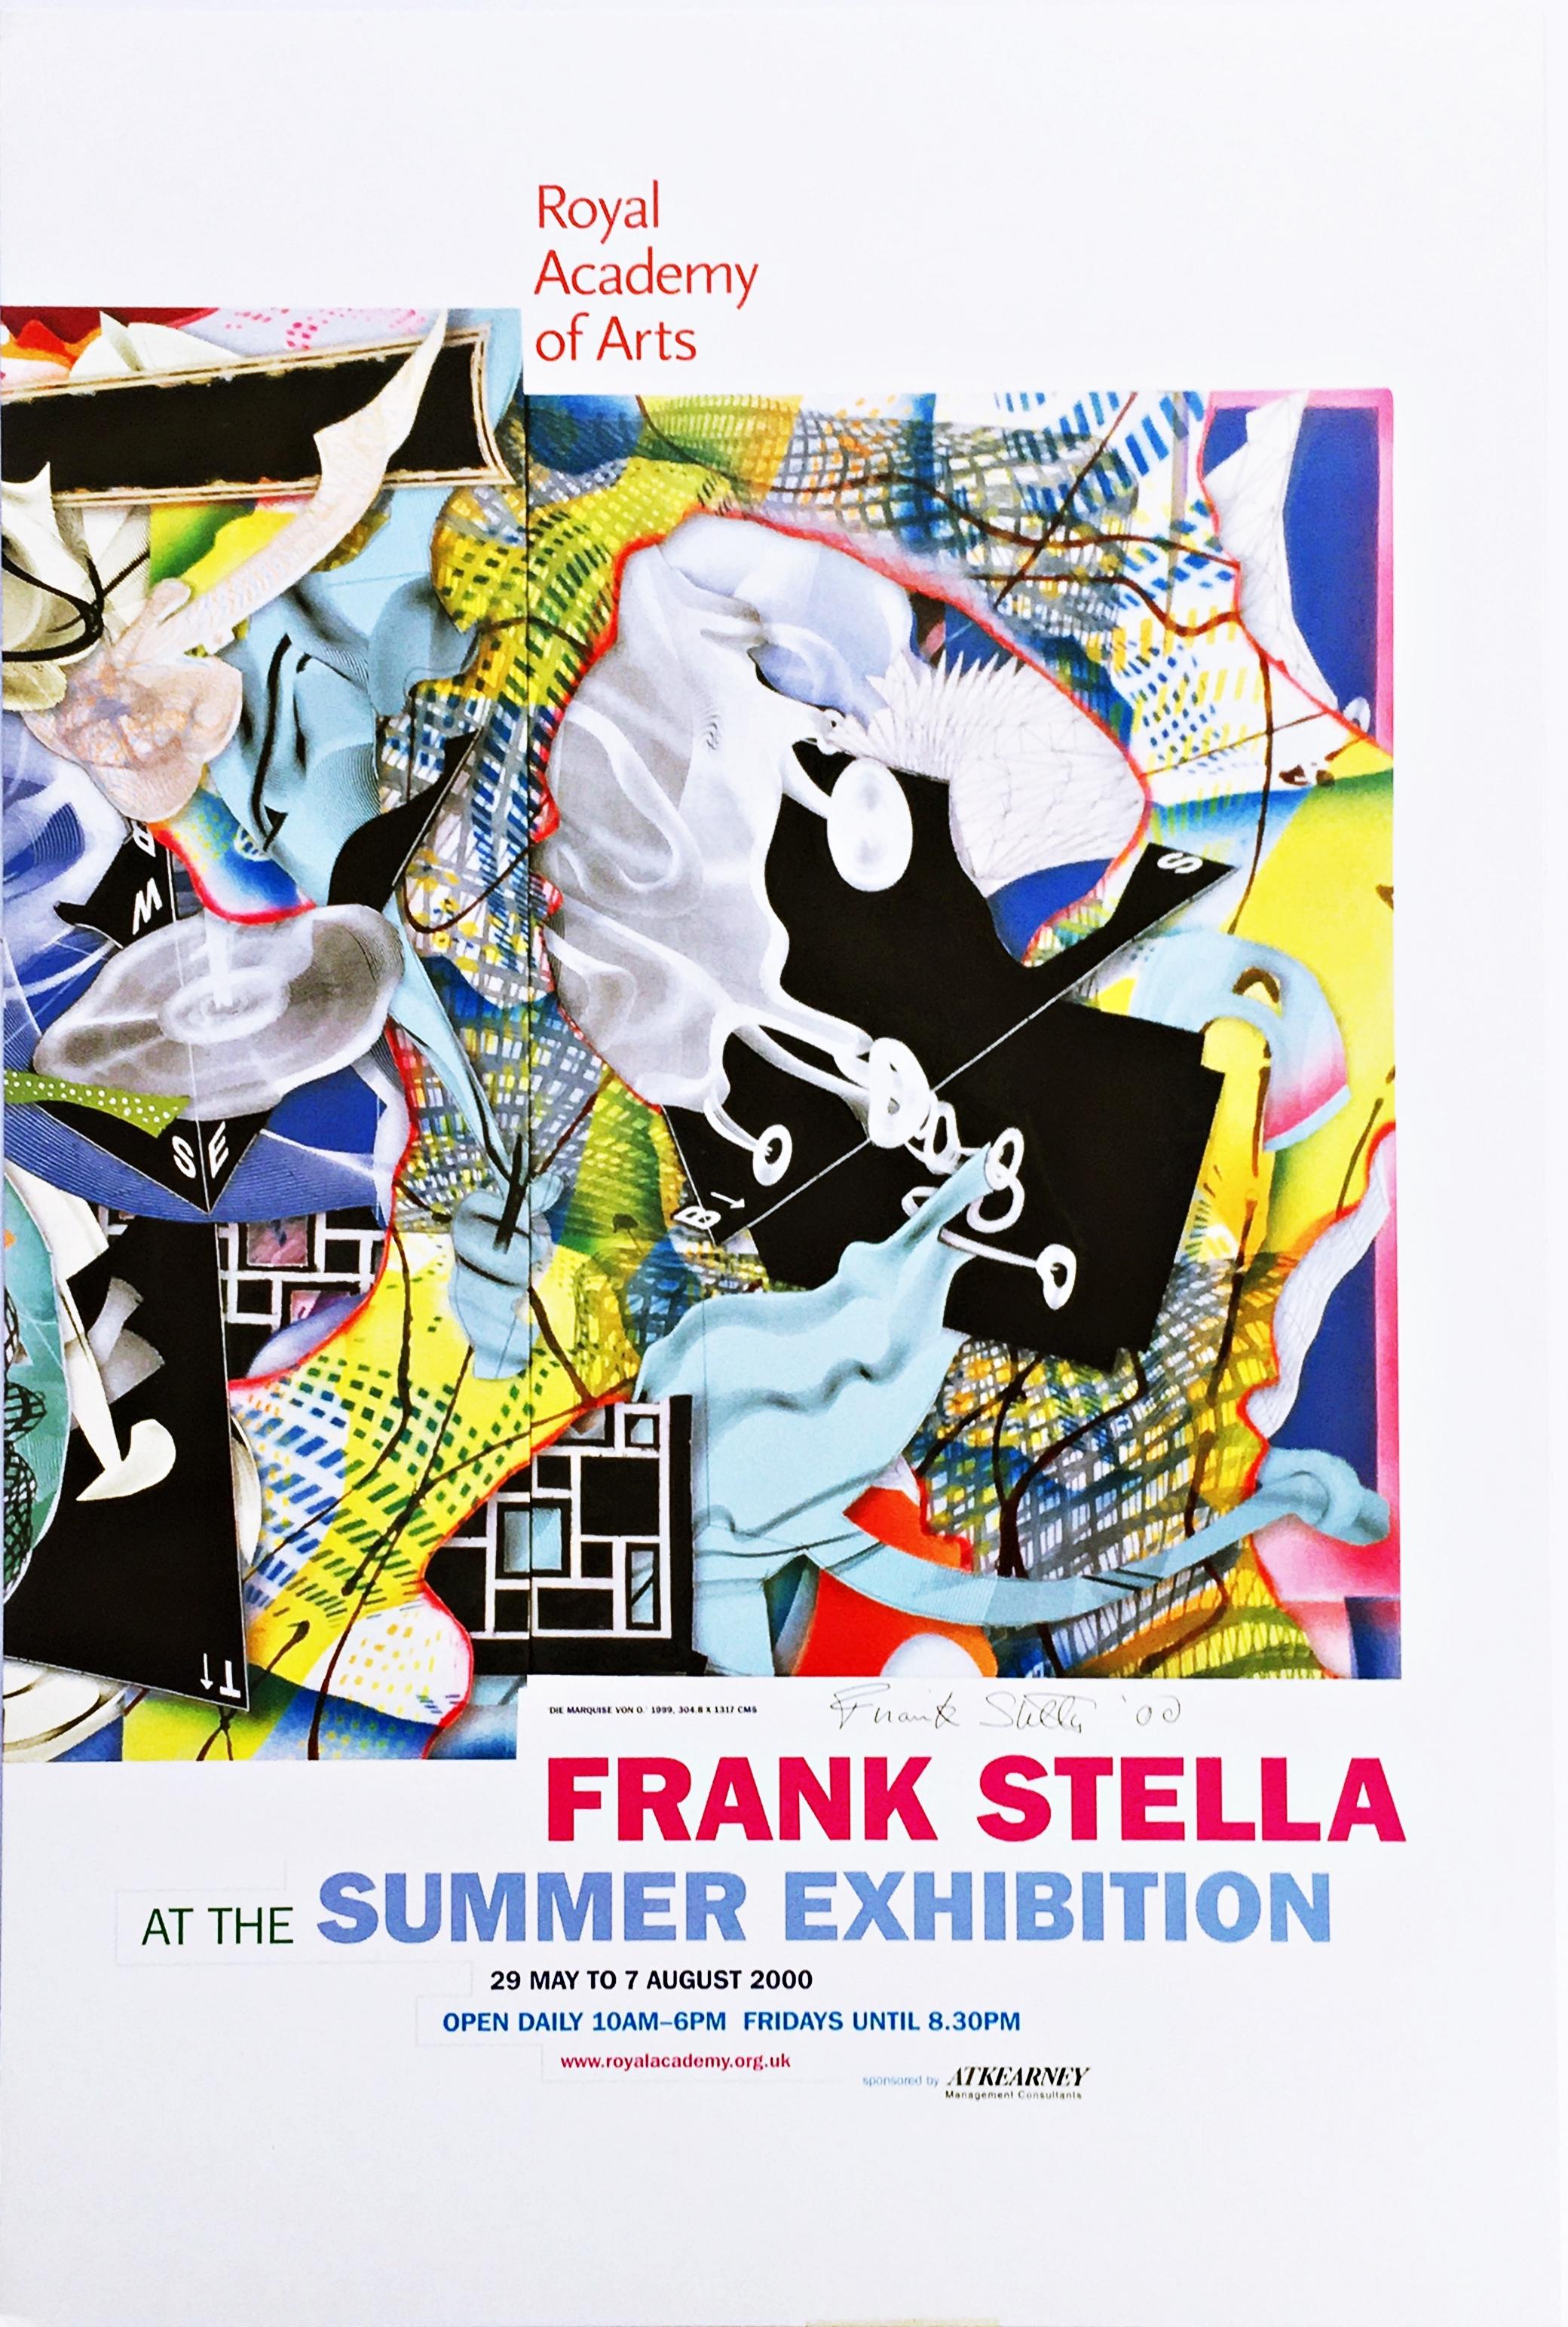 Frank Stella
Frank Stella, Royal Academy of Arts (handsigniert), 2000
Offsetlithographie auf Karton 
Auf der Vorderseite mit Tinte handsigniert und datiert von Frank Stella
29 3/4 x 20 Zoll
Ungerahmt
Dieses Frank Stella-Poster wurde anlässlich der